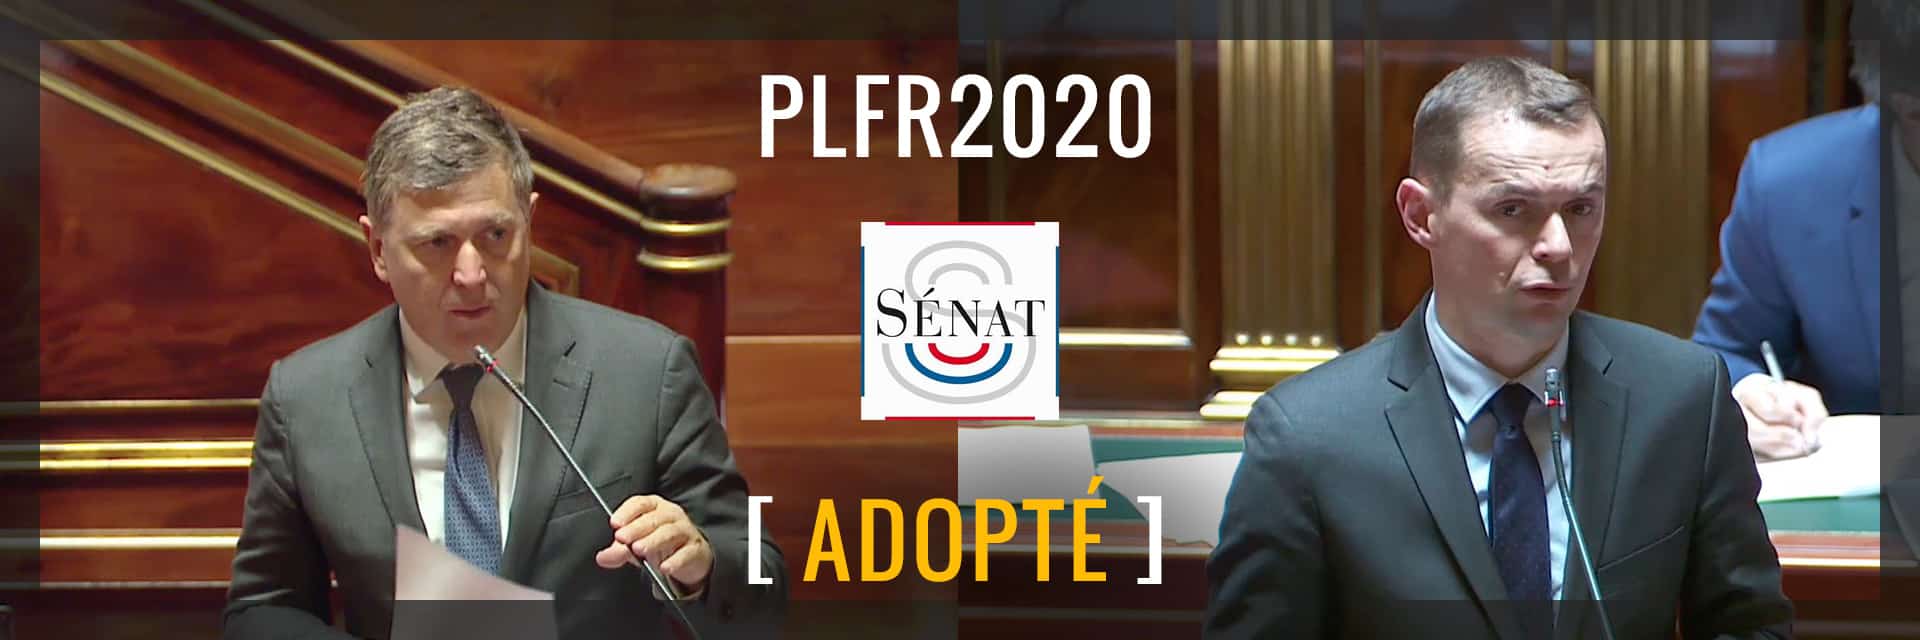 Les mesures adoptées en première lecture au Sénat dans le cadre du 3ème PLFR 2020